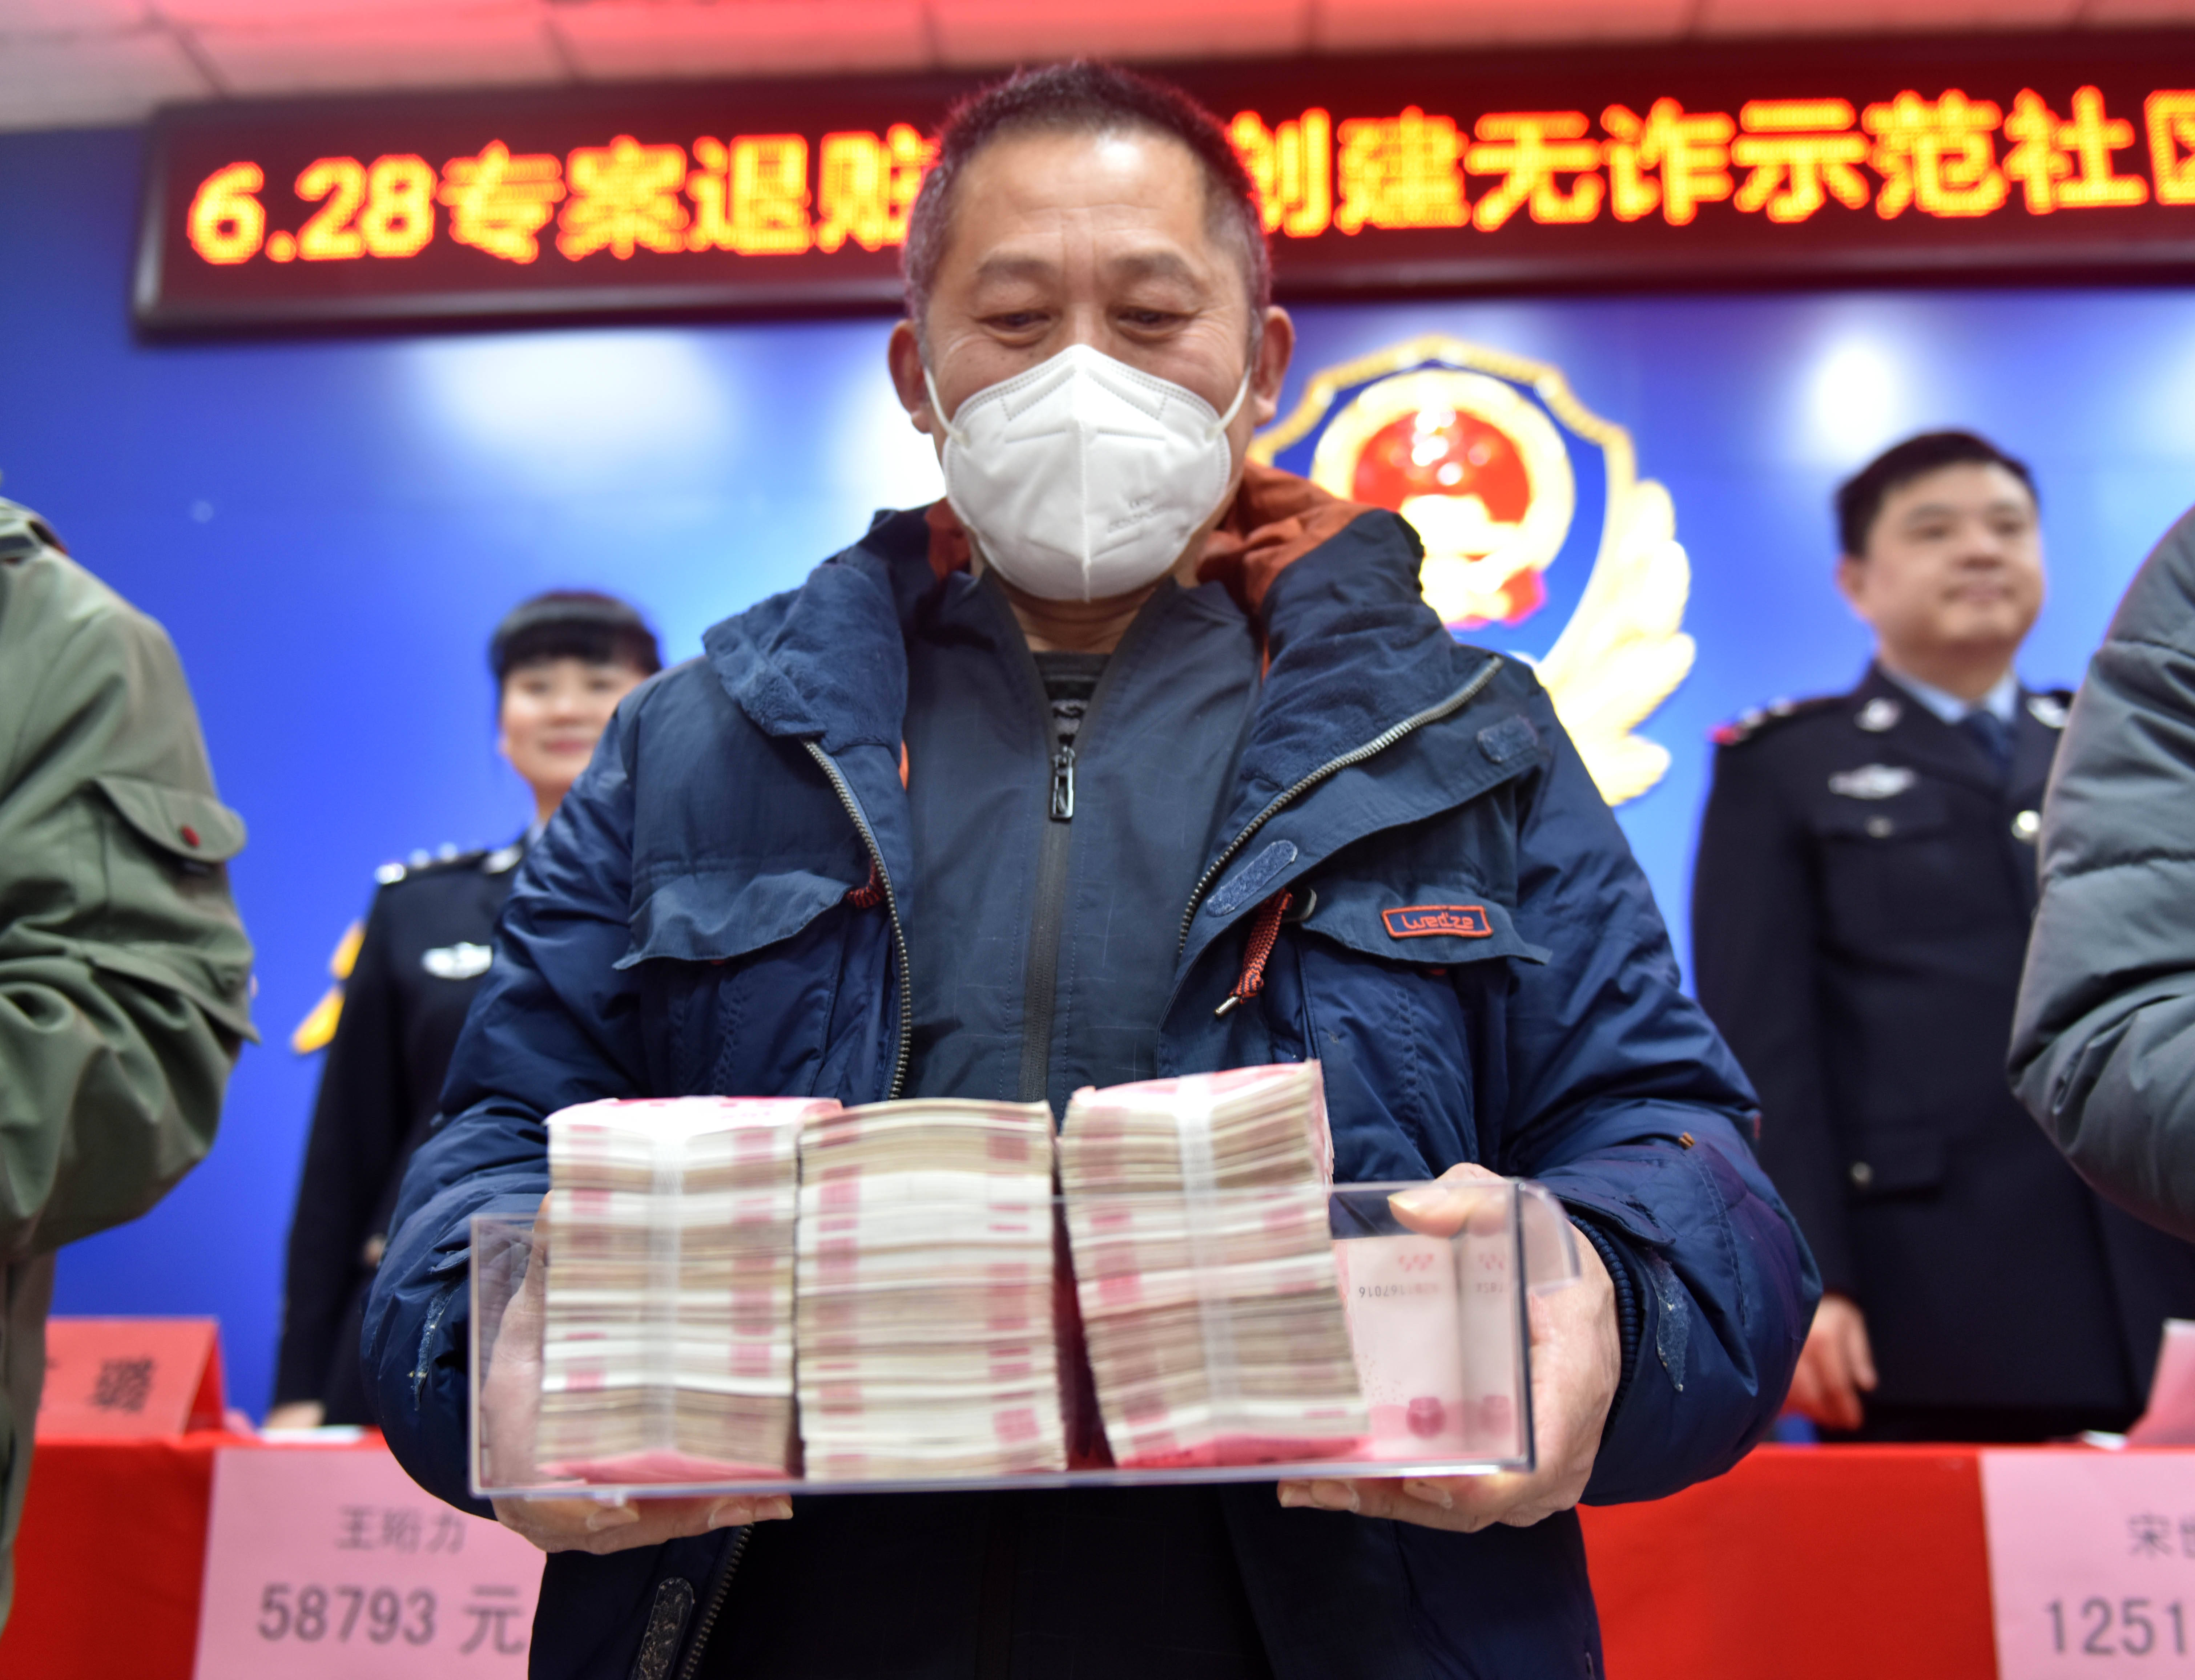 江西景德镇警方向群众返回被骗现金60万